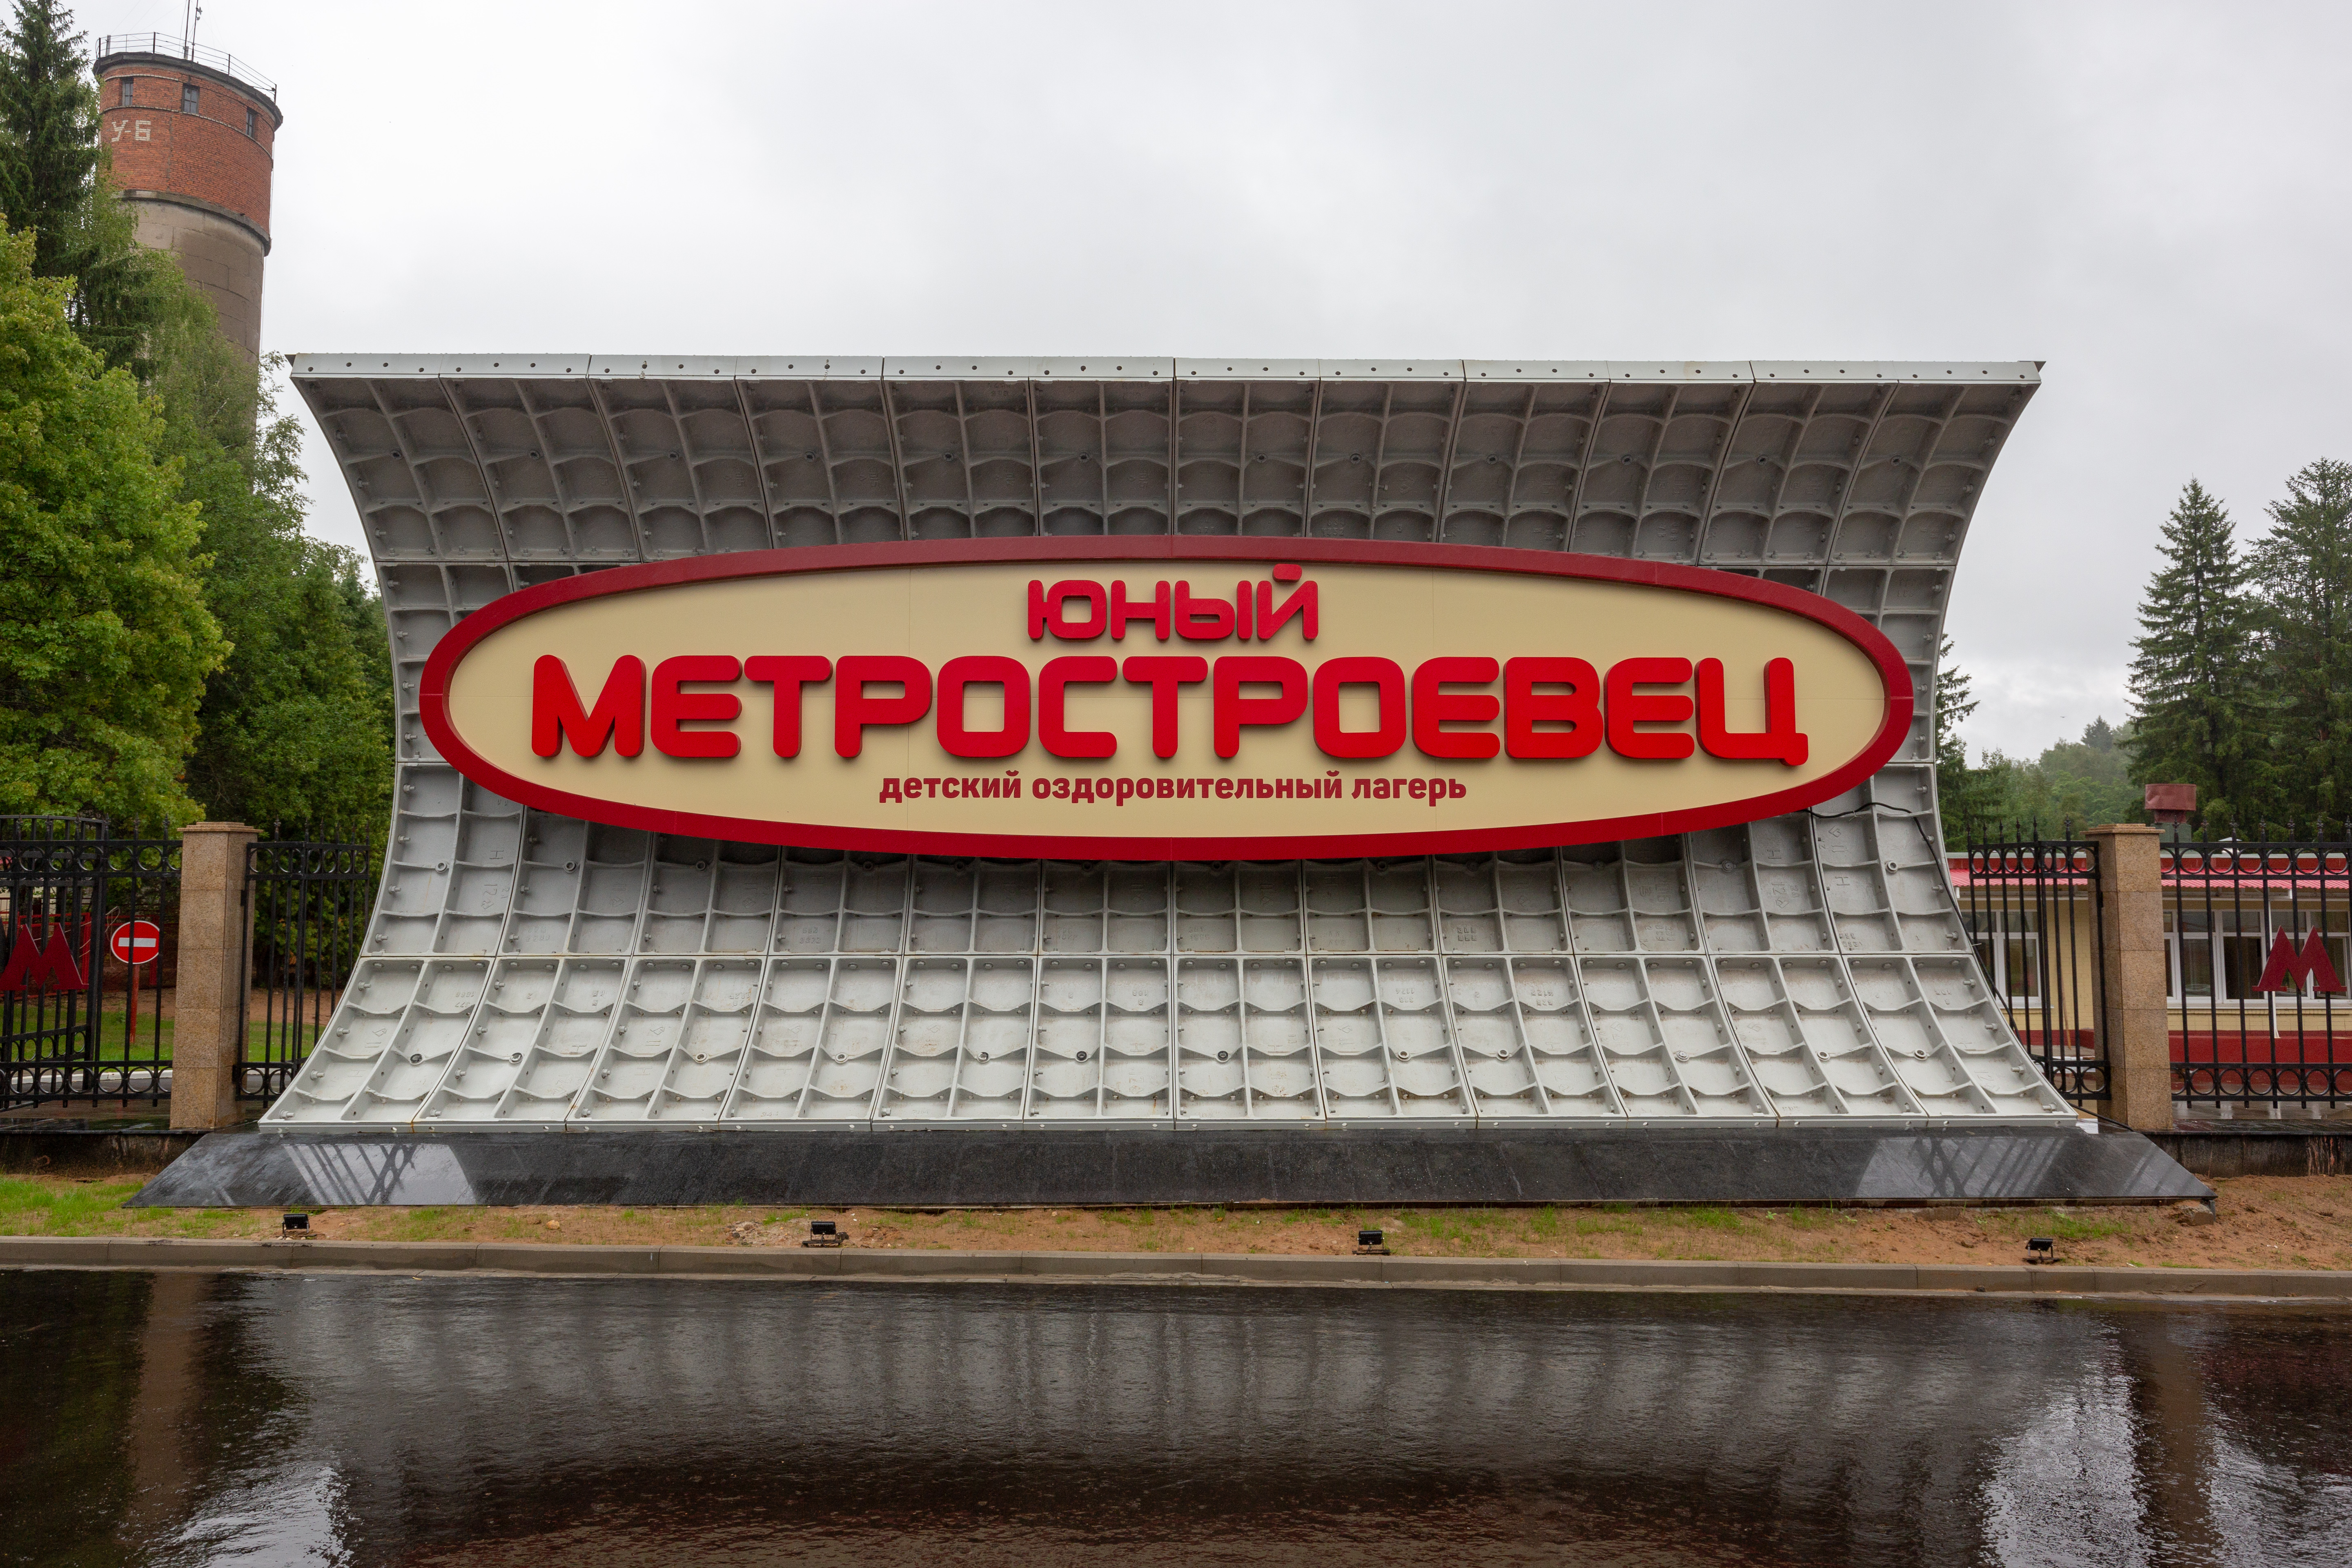 Первый в России музей спецтехники метростроителей открылся под открытым небом в детском лагере «Юный метростроевец» 